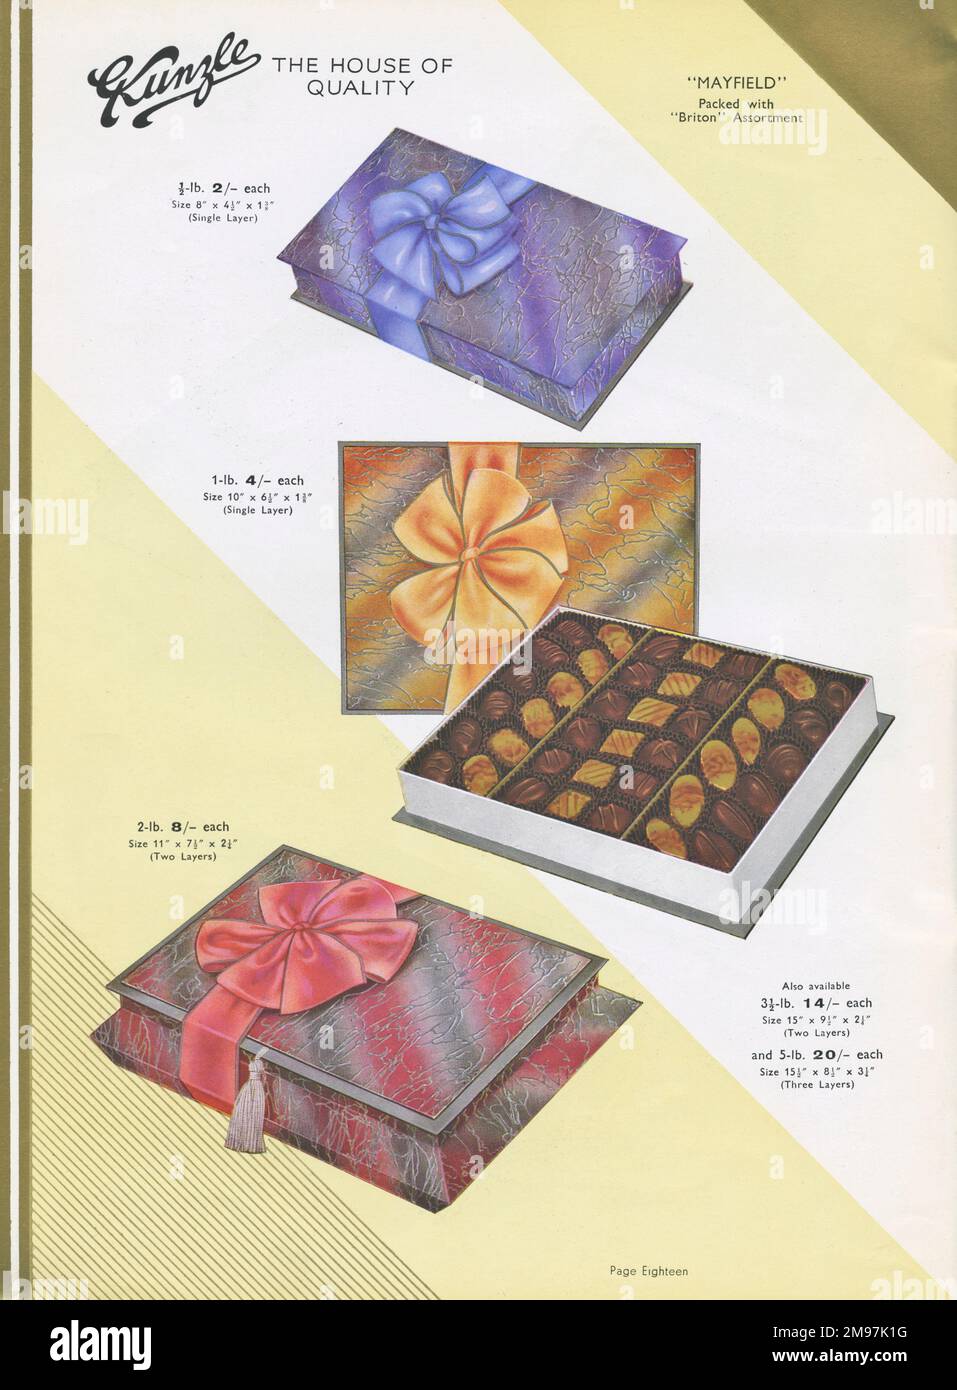 Eine Seite aus einem Katalog, Kunzle Chocolate List, in der die Mayfield-Stil luxuriöser Präsentationsboxen in verschiedenen Formen und Größen gezeigt wird. Stockfoto